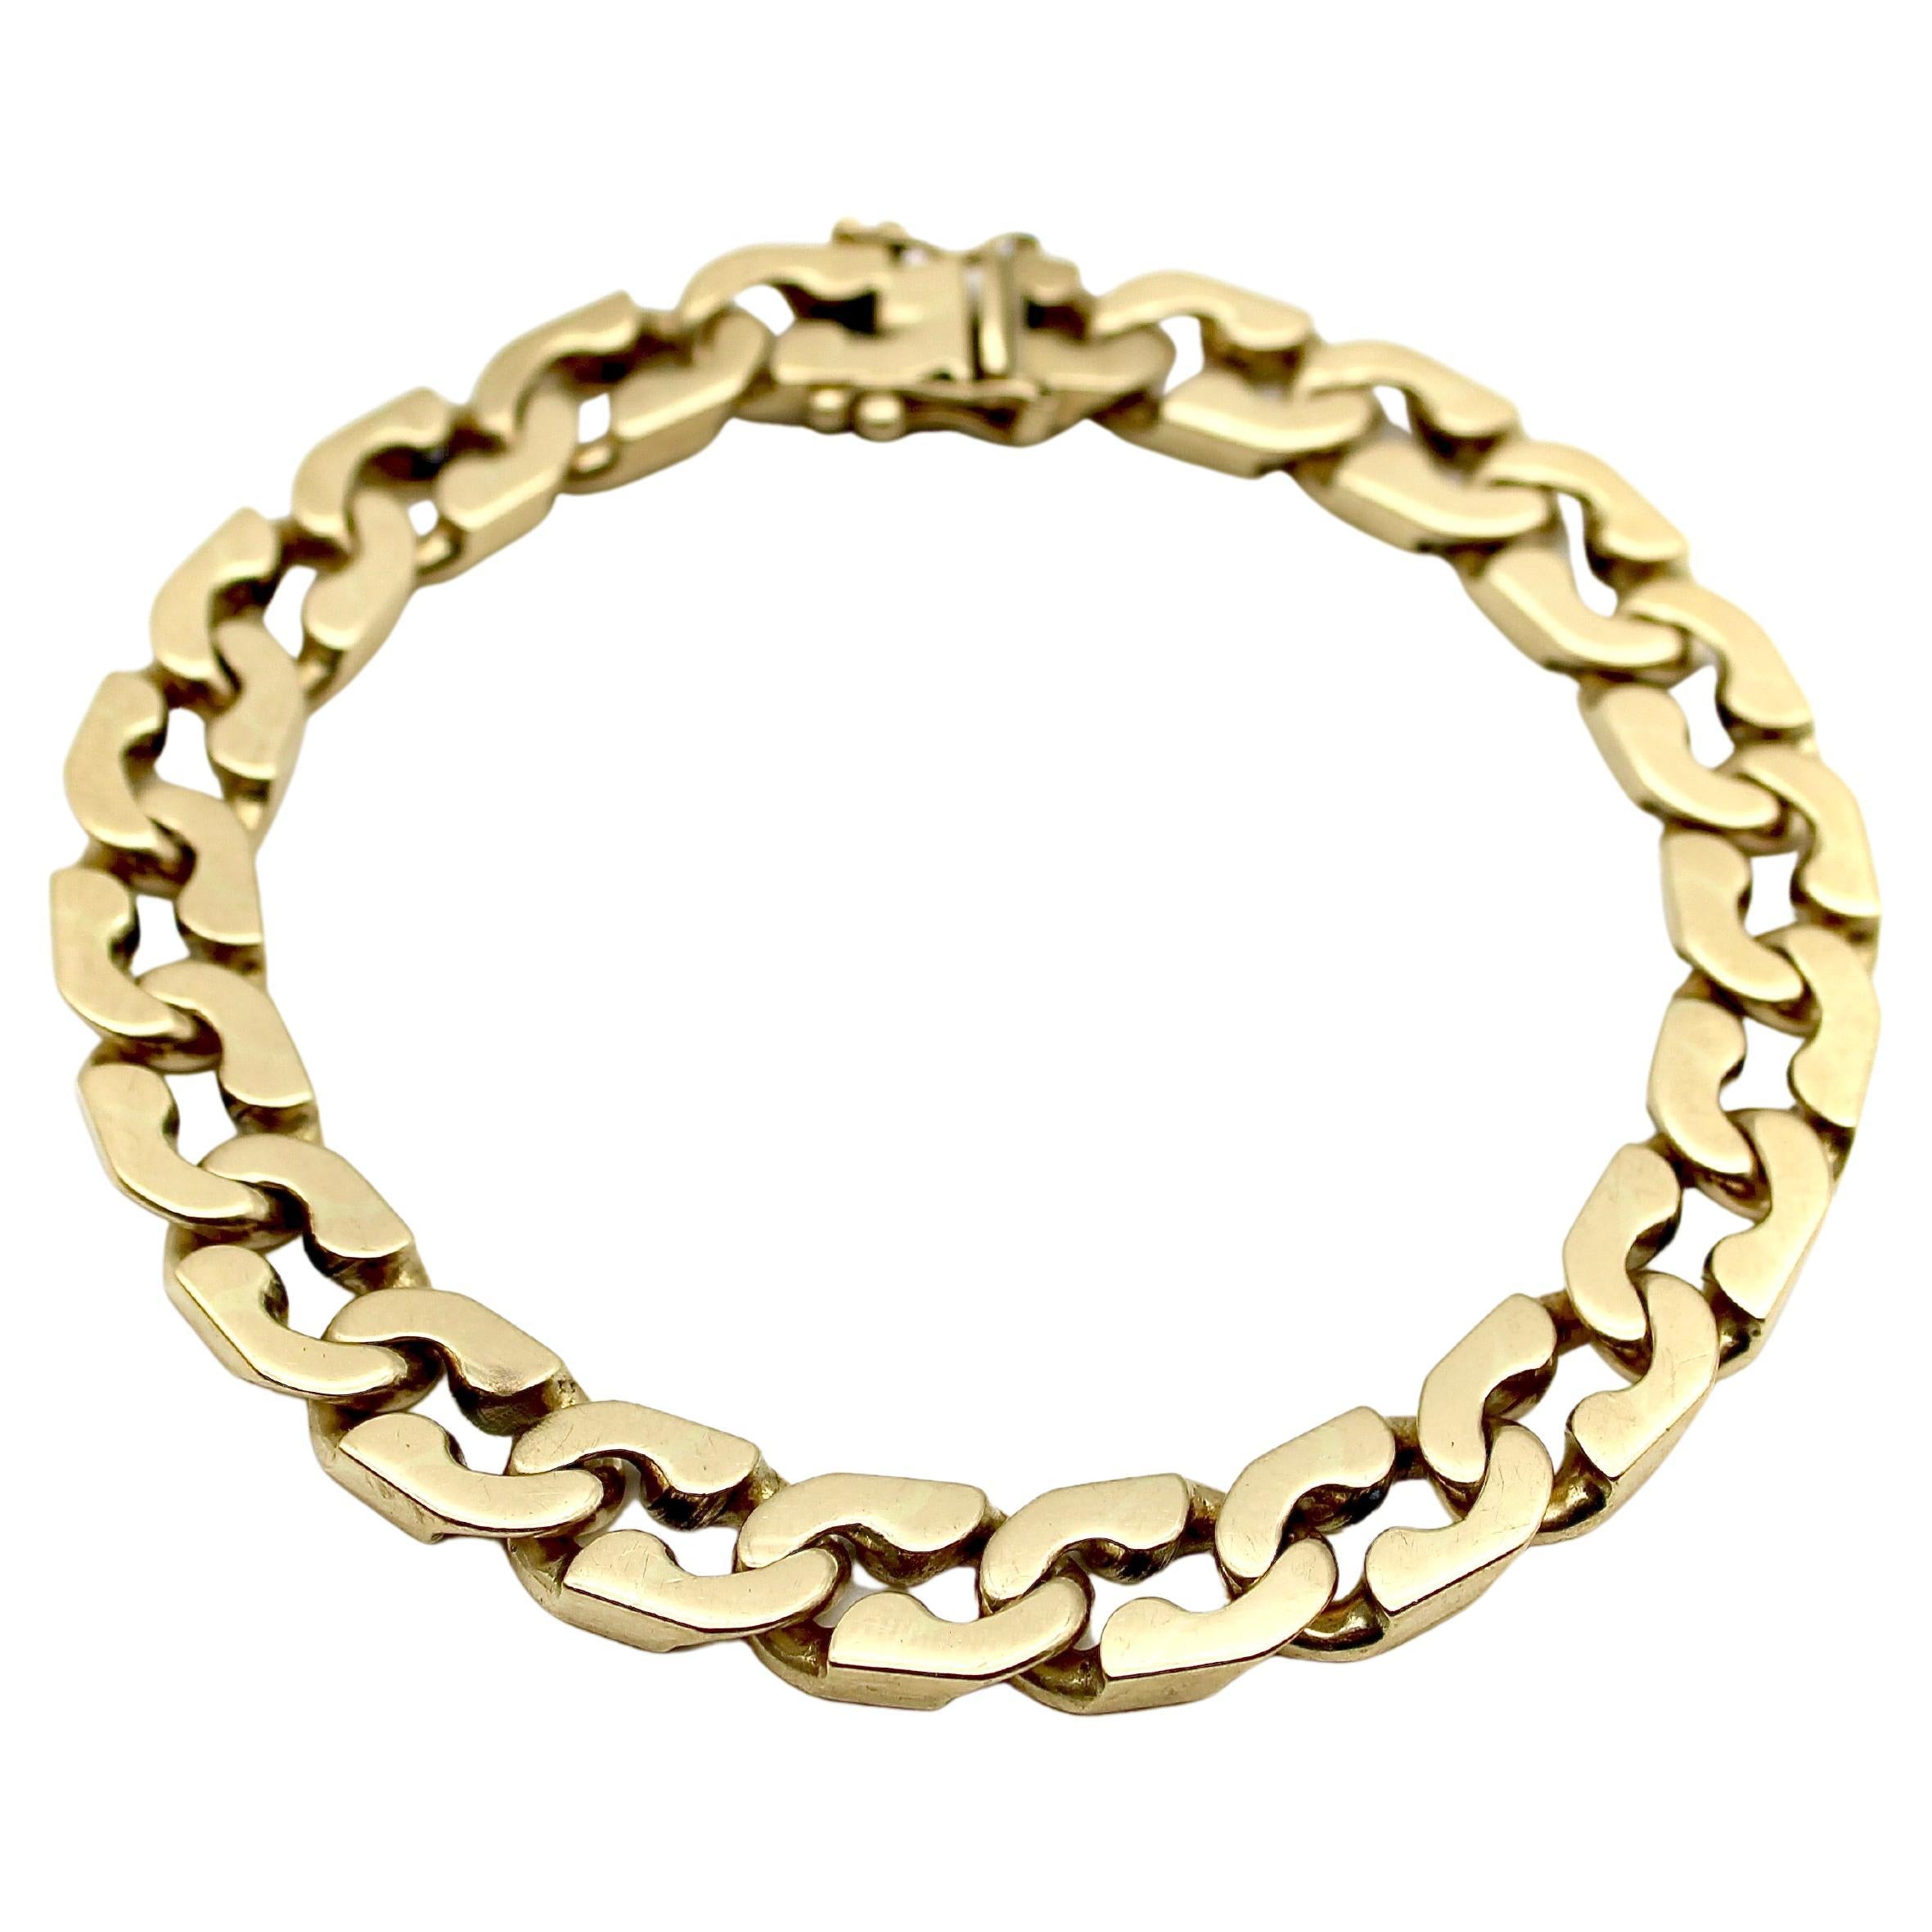 Antique 14k Gold Link Bracelets - 1,364 For Sale at 1stDibs 